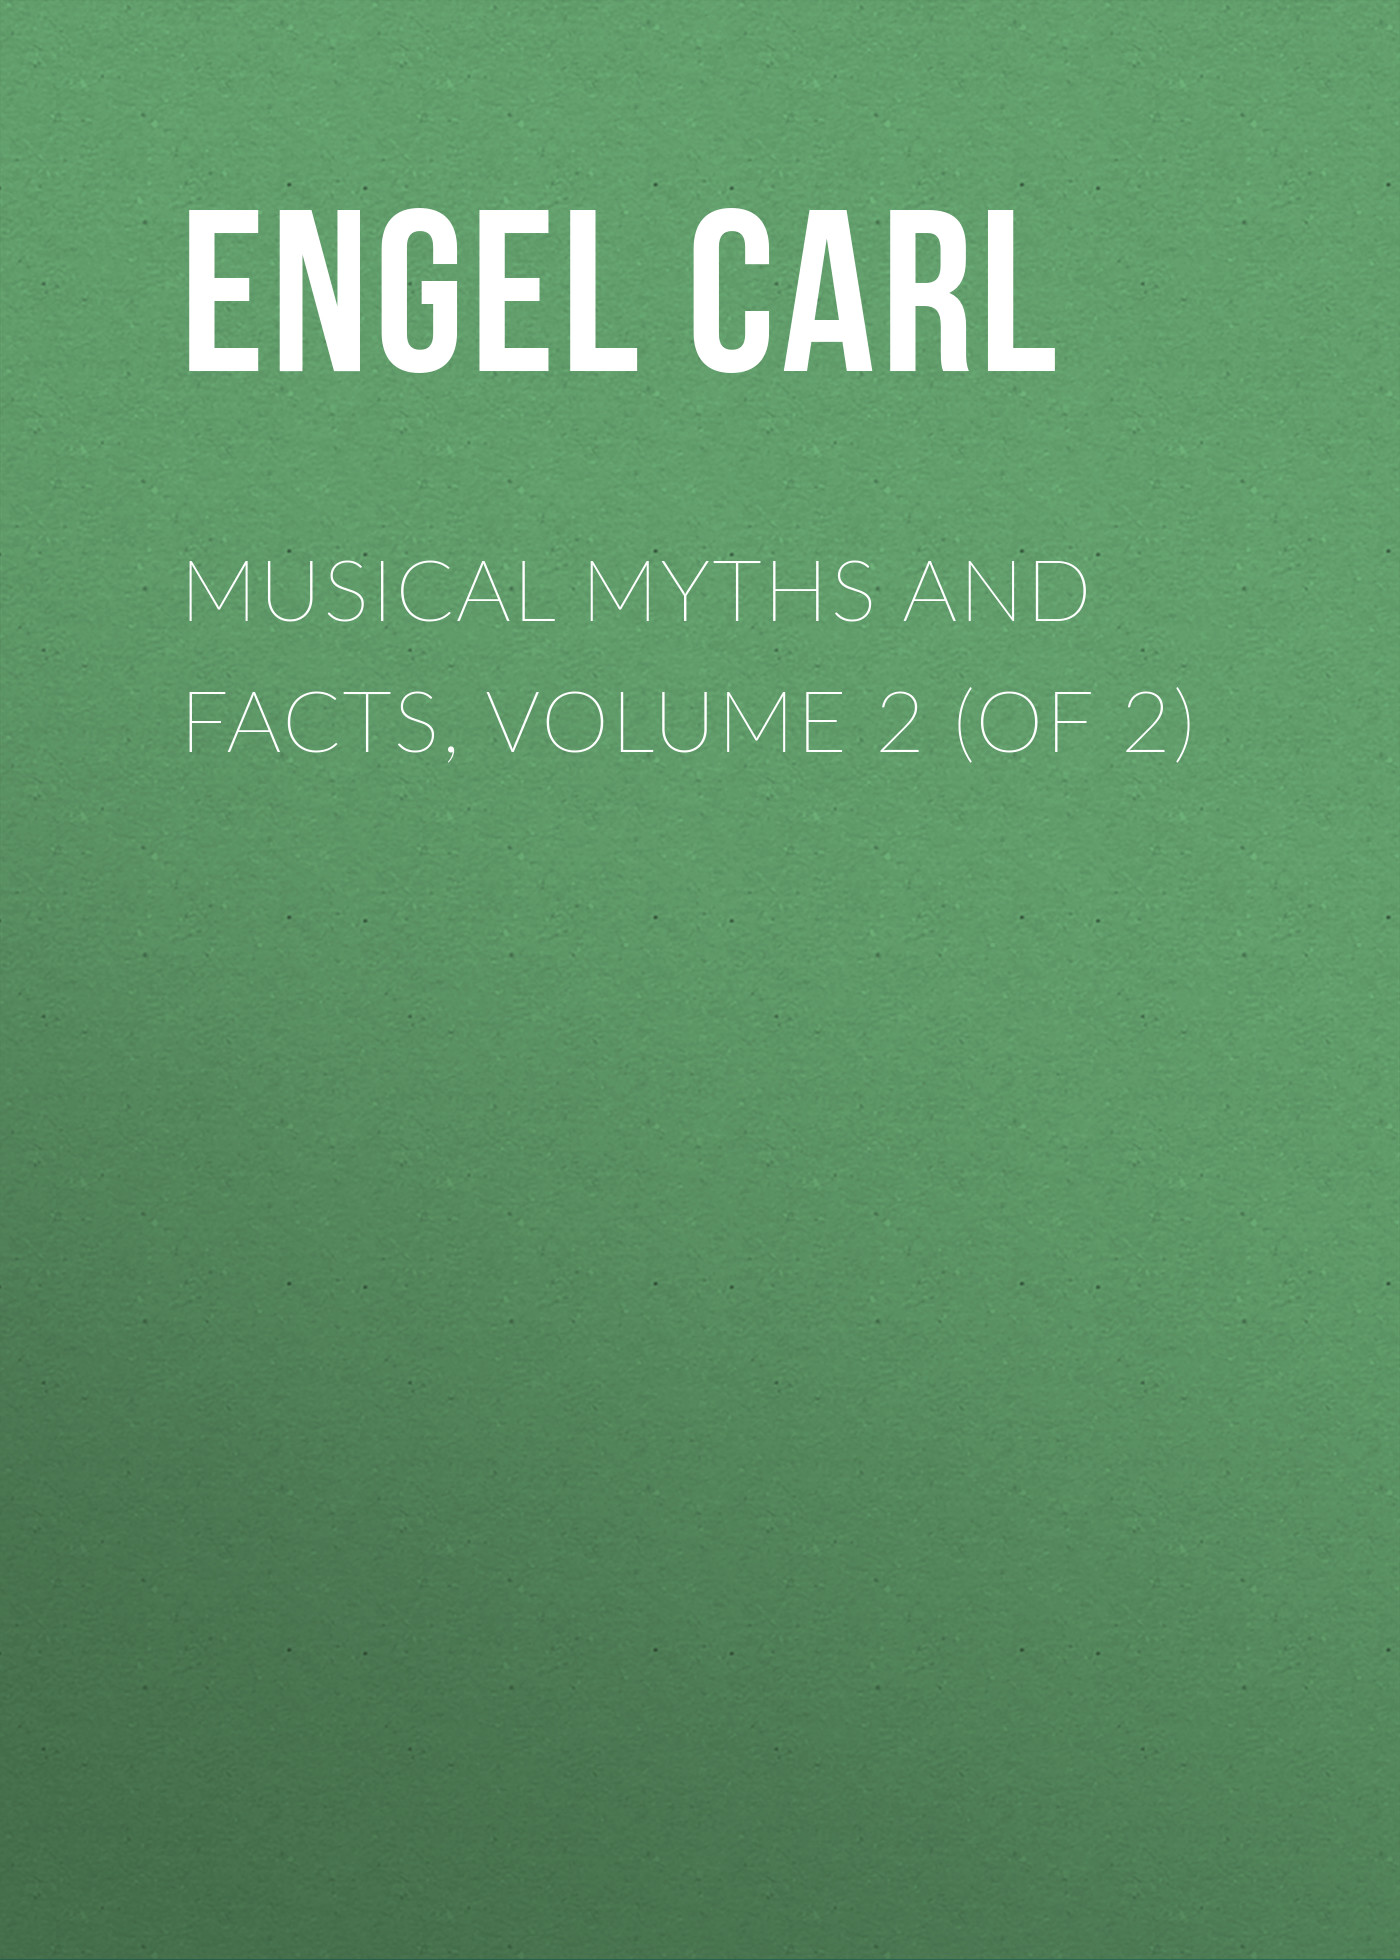 Книга Musical Myths and Facts, Volume 2 (of 2) из серии , созданная Carl Engel, может относится к жанру Музыка, балет, Зарубежная старинная литература, Зарубежная классика. Стоимость книги Musical Myths and Facts, Volume 2 (of 2)  с идентификатором 24712441 составляет 0 руб.